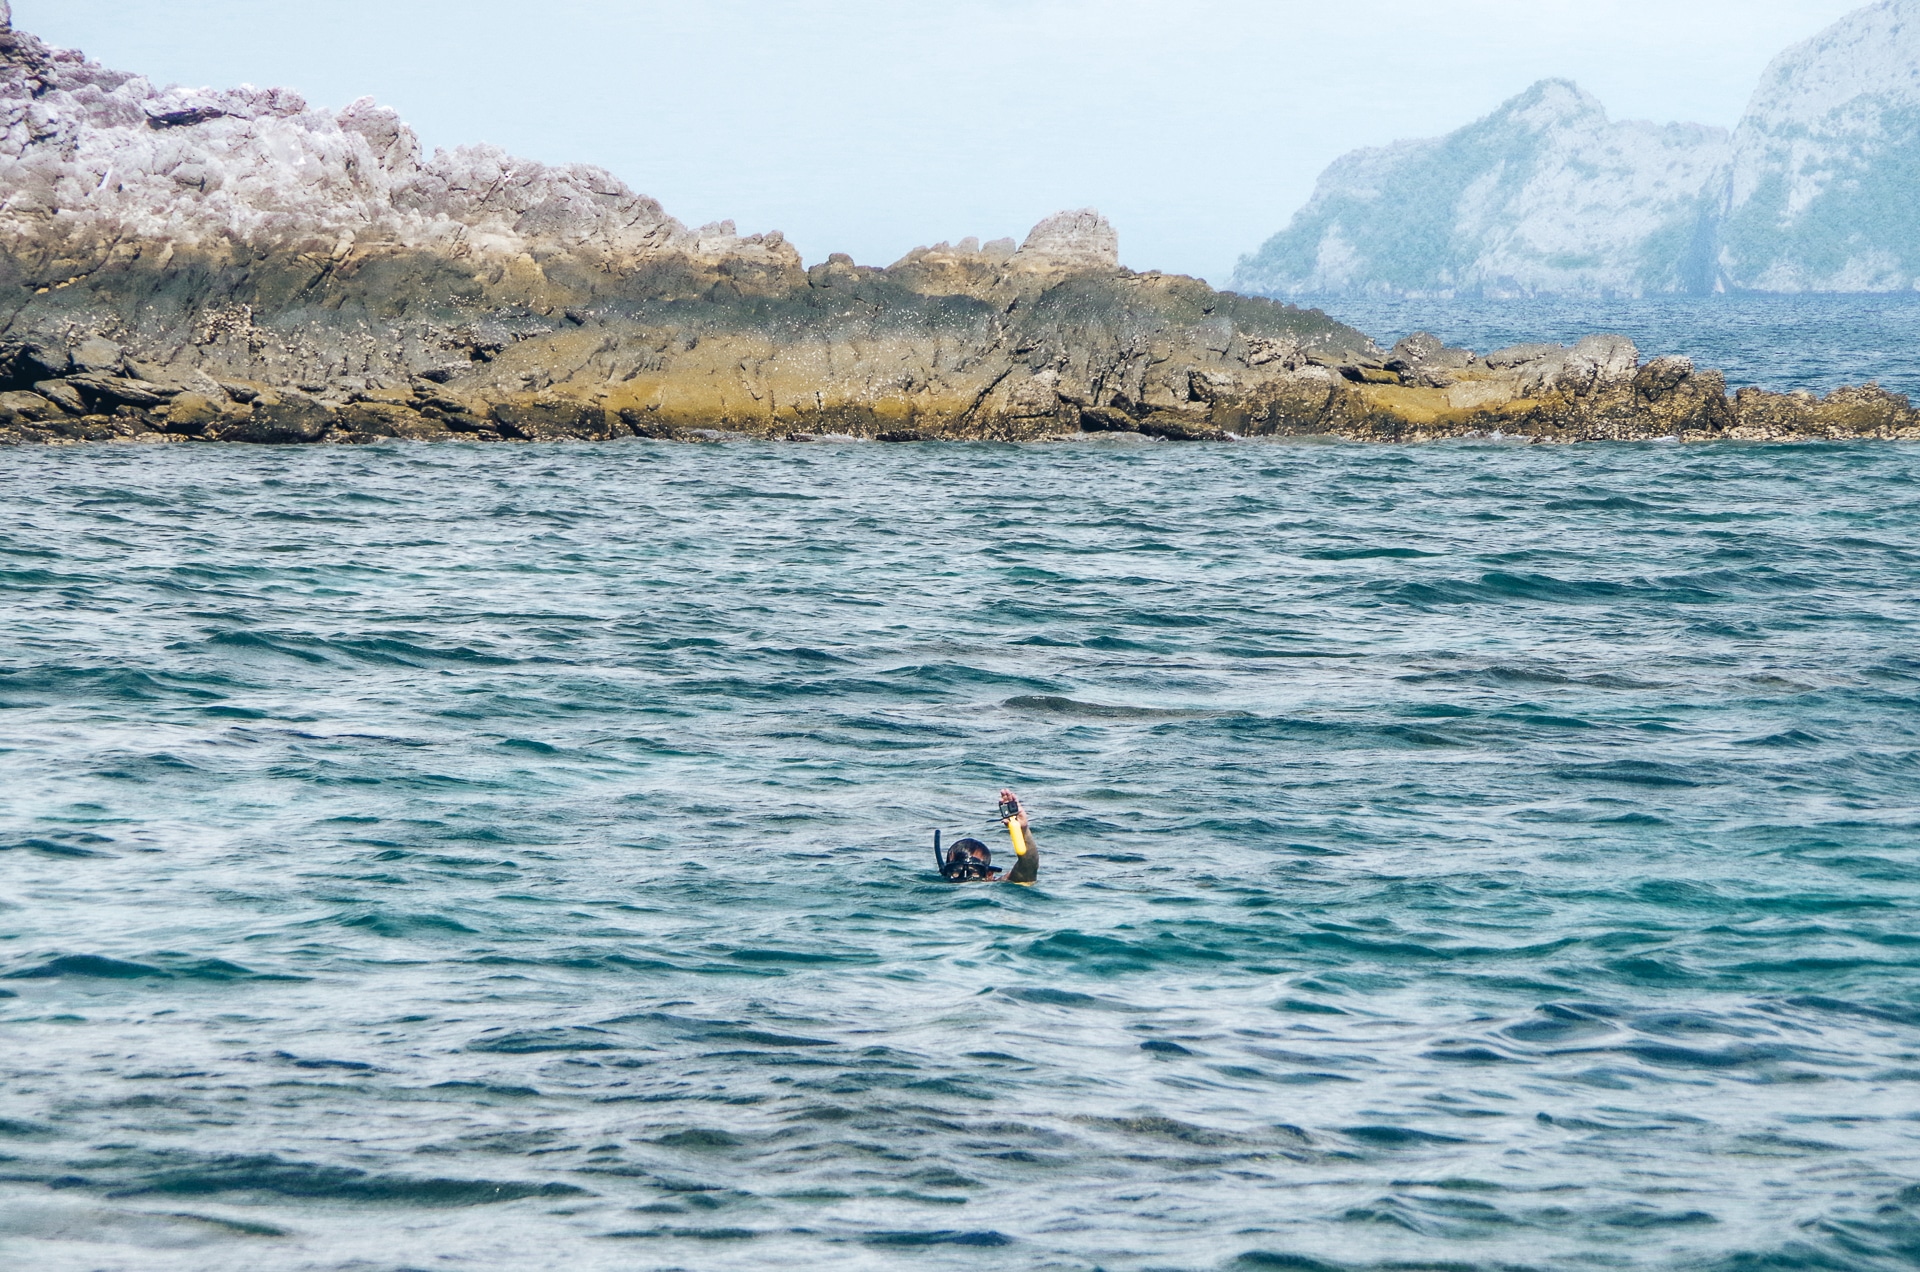 session snorkeling dans l'archipel des Mergui depuis Kawthaung